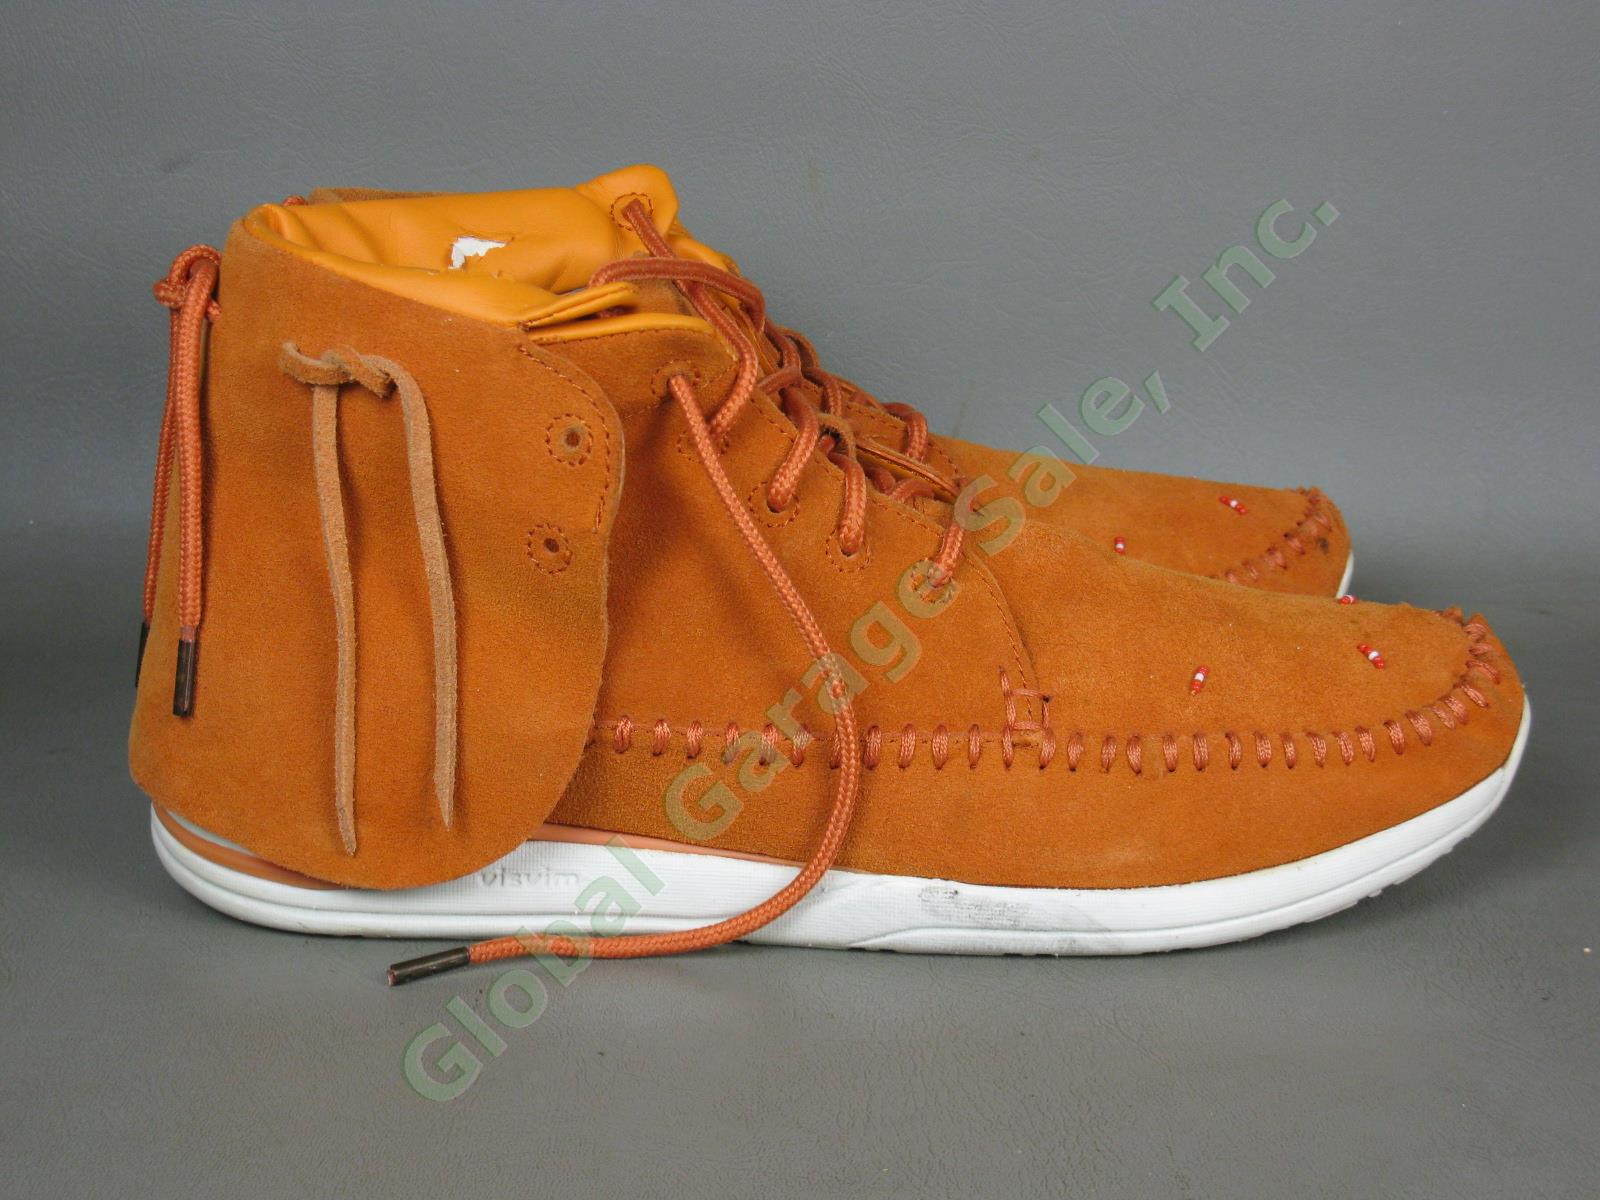 Visvim Lhamo Mens Brown Suede Leather Shoes Folk FBT Size Euro 45 US 11.5 3